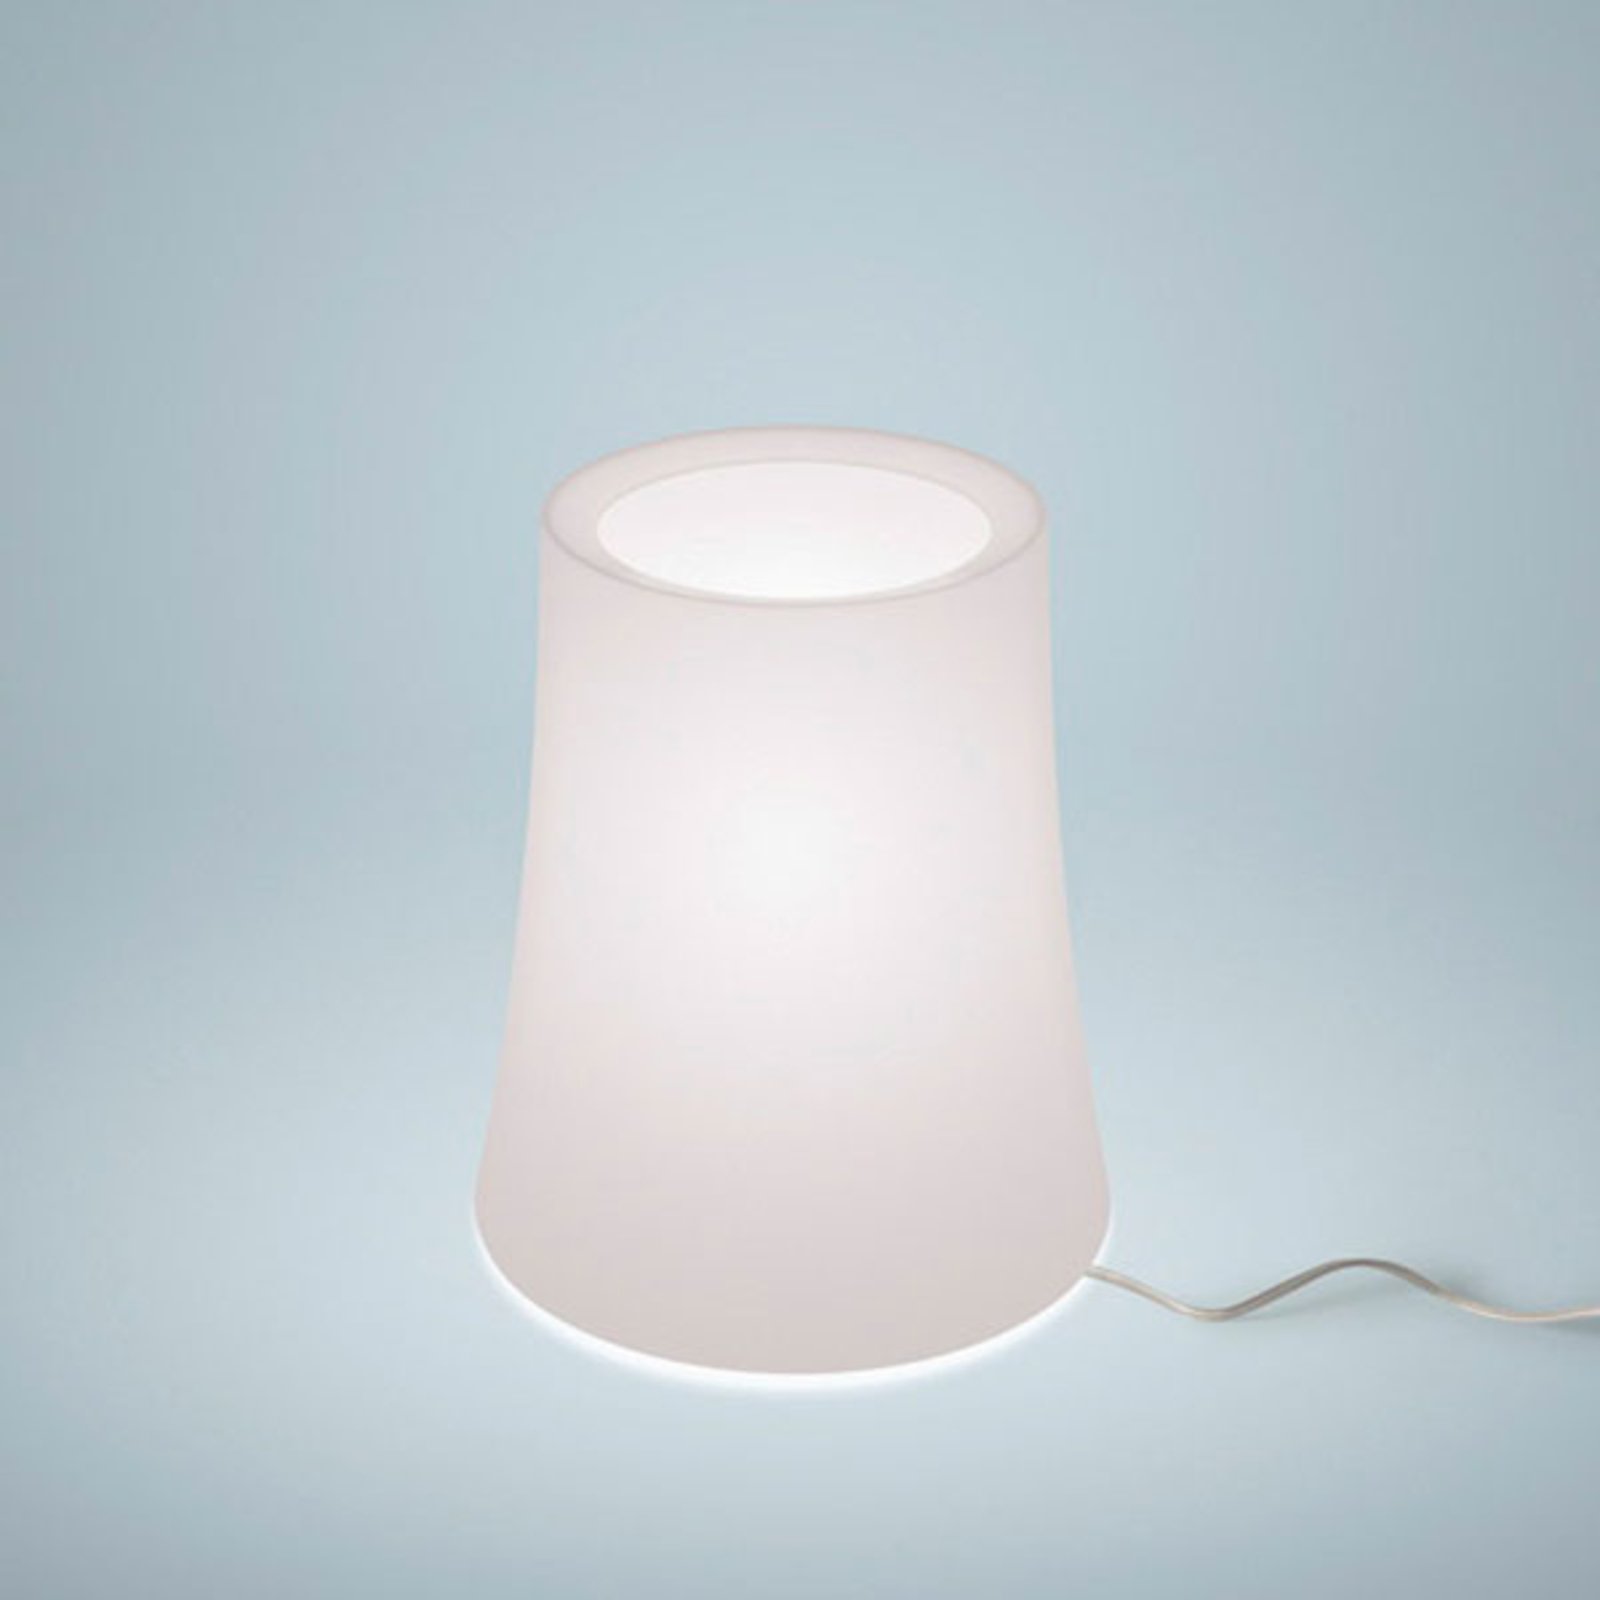 Foscarini Birdie Zero table lamp, height 20 cm